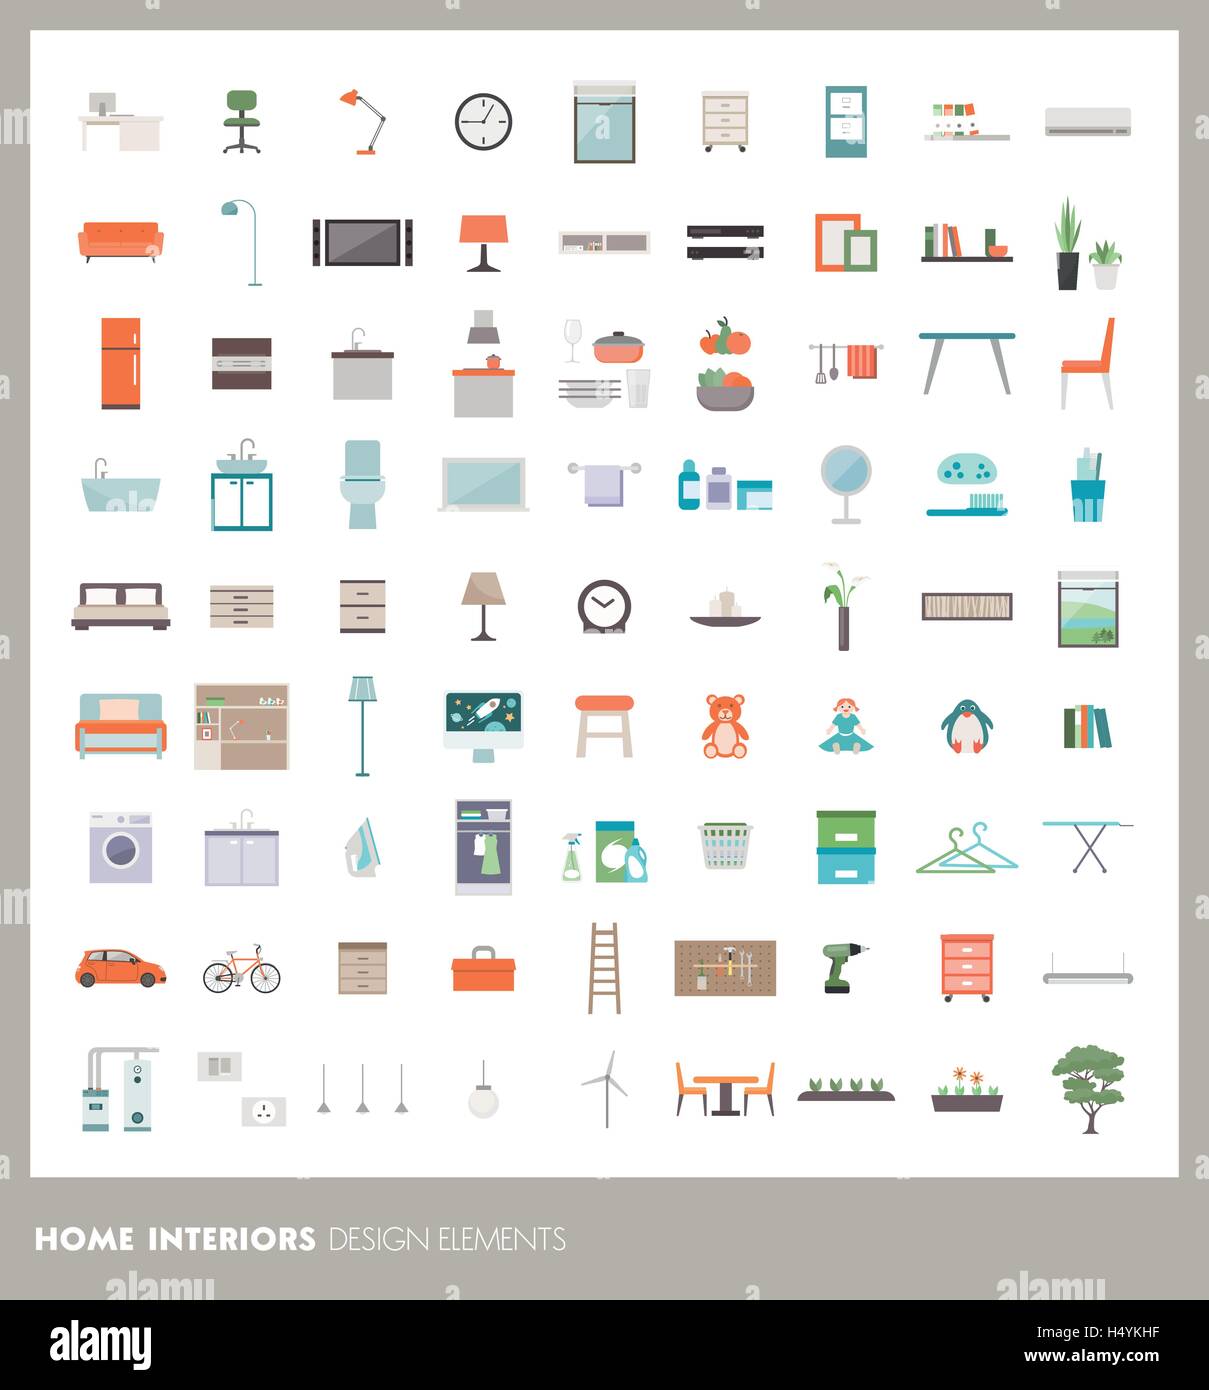 Home Interieur Design-Elemente und Symbole gesetzt: Möbel, Objekte und Geräte Stock Vektor